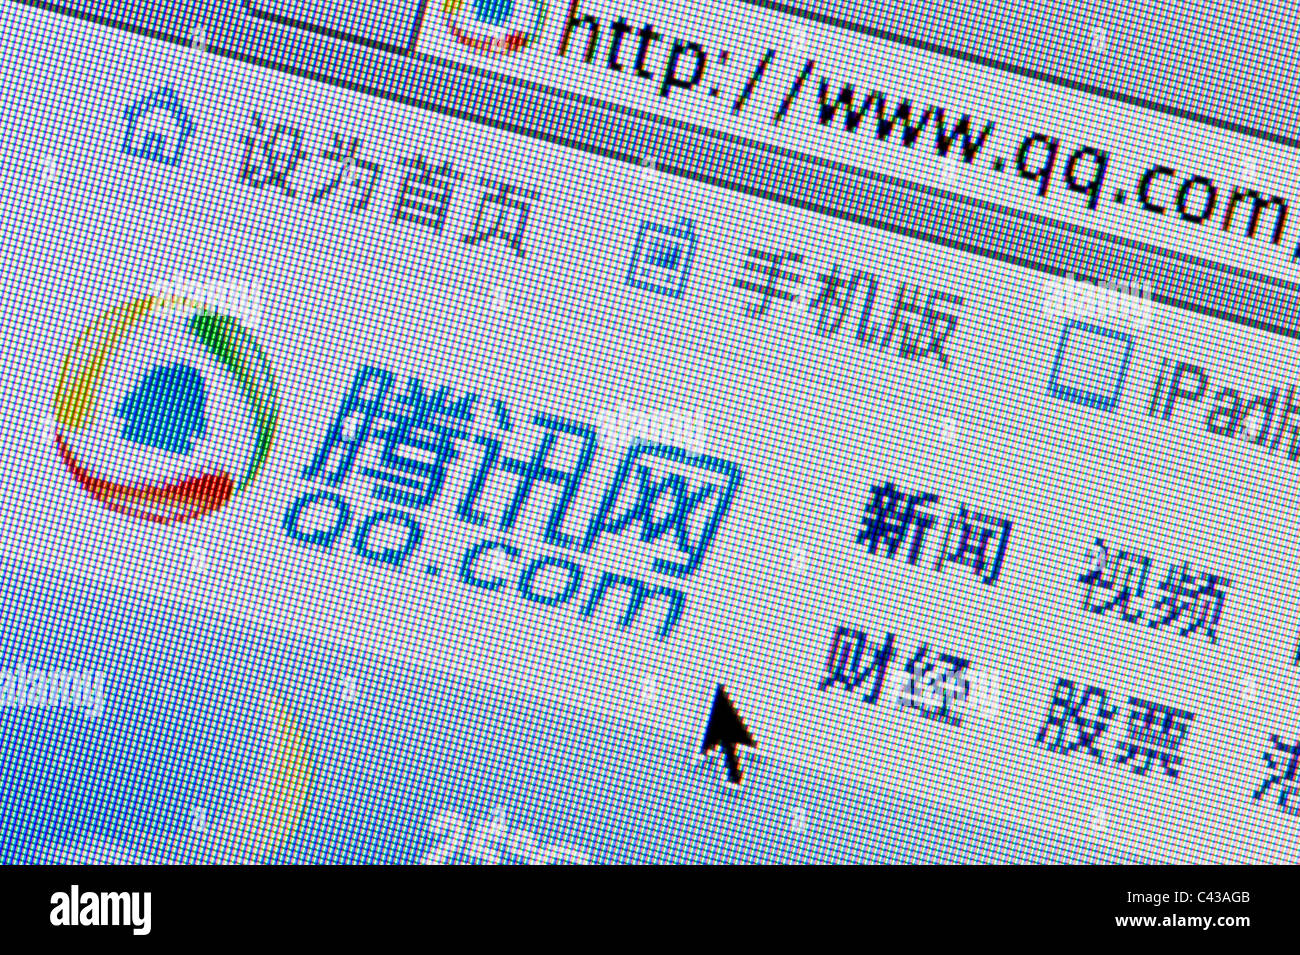 De près de l'logo Tencent QQ comme vu sur son site web. (Usage éditorial uniquement : -Print, télévision, e-book et le comité éditorial du site). Banque D'Images